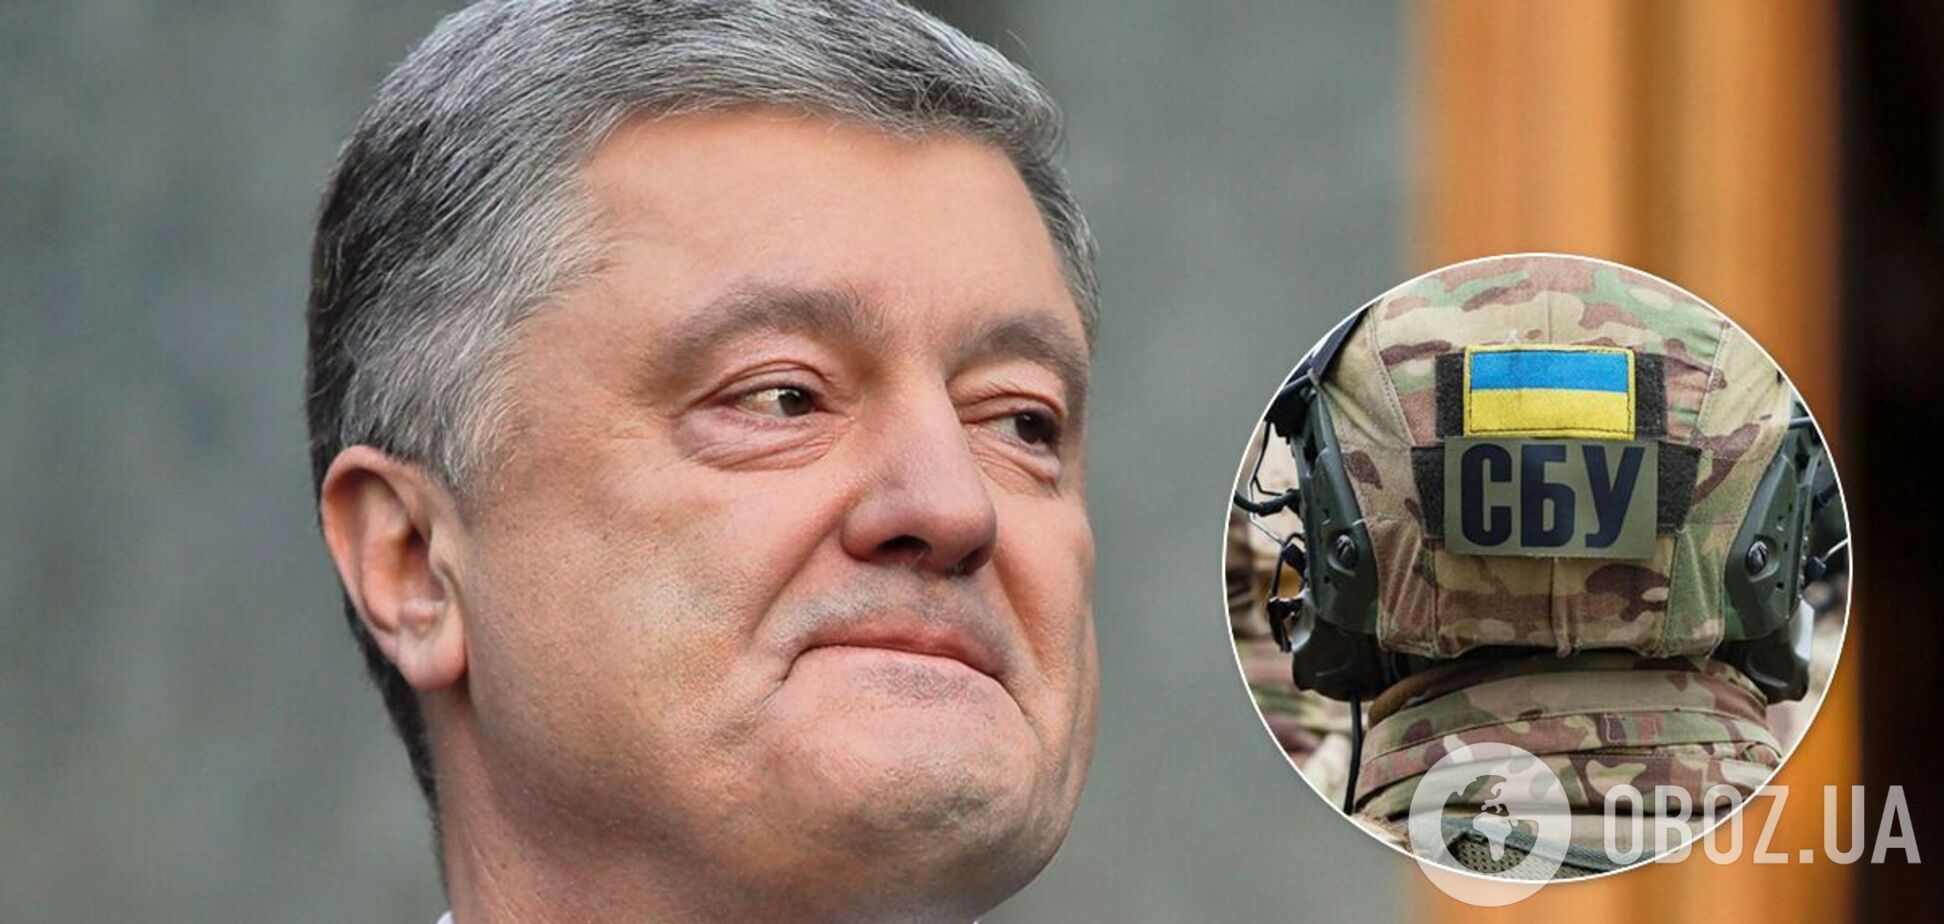 'ЕС' обратилась к Баканову из-за давления СБУ на кандидатов на Донбассе